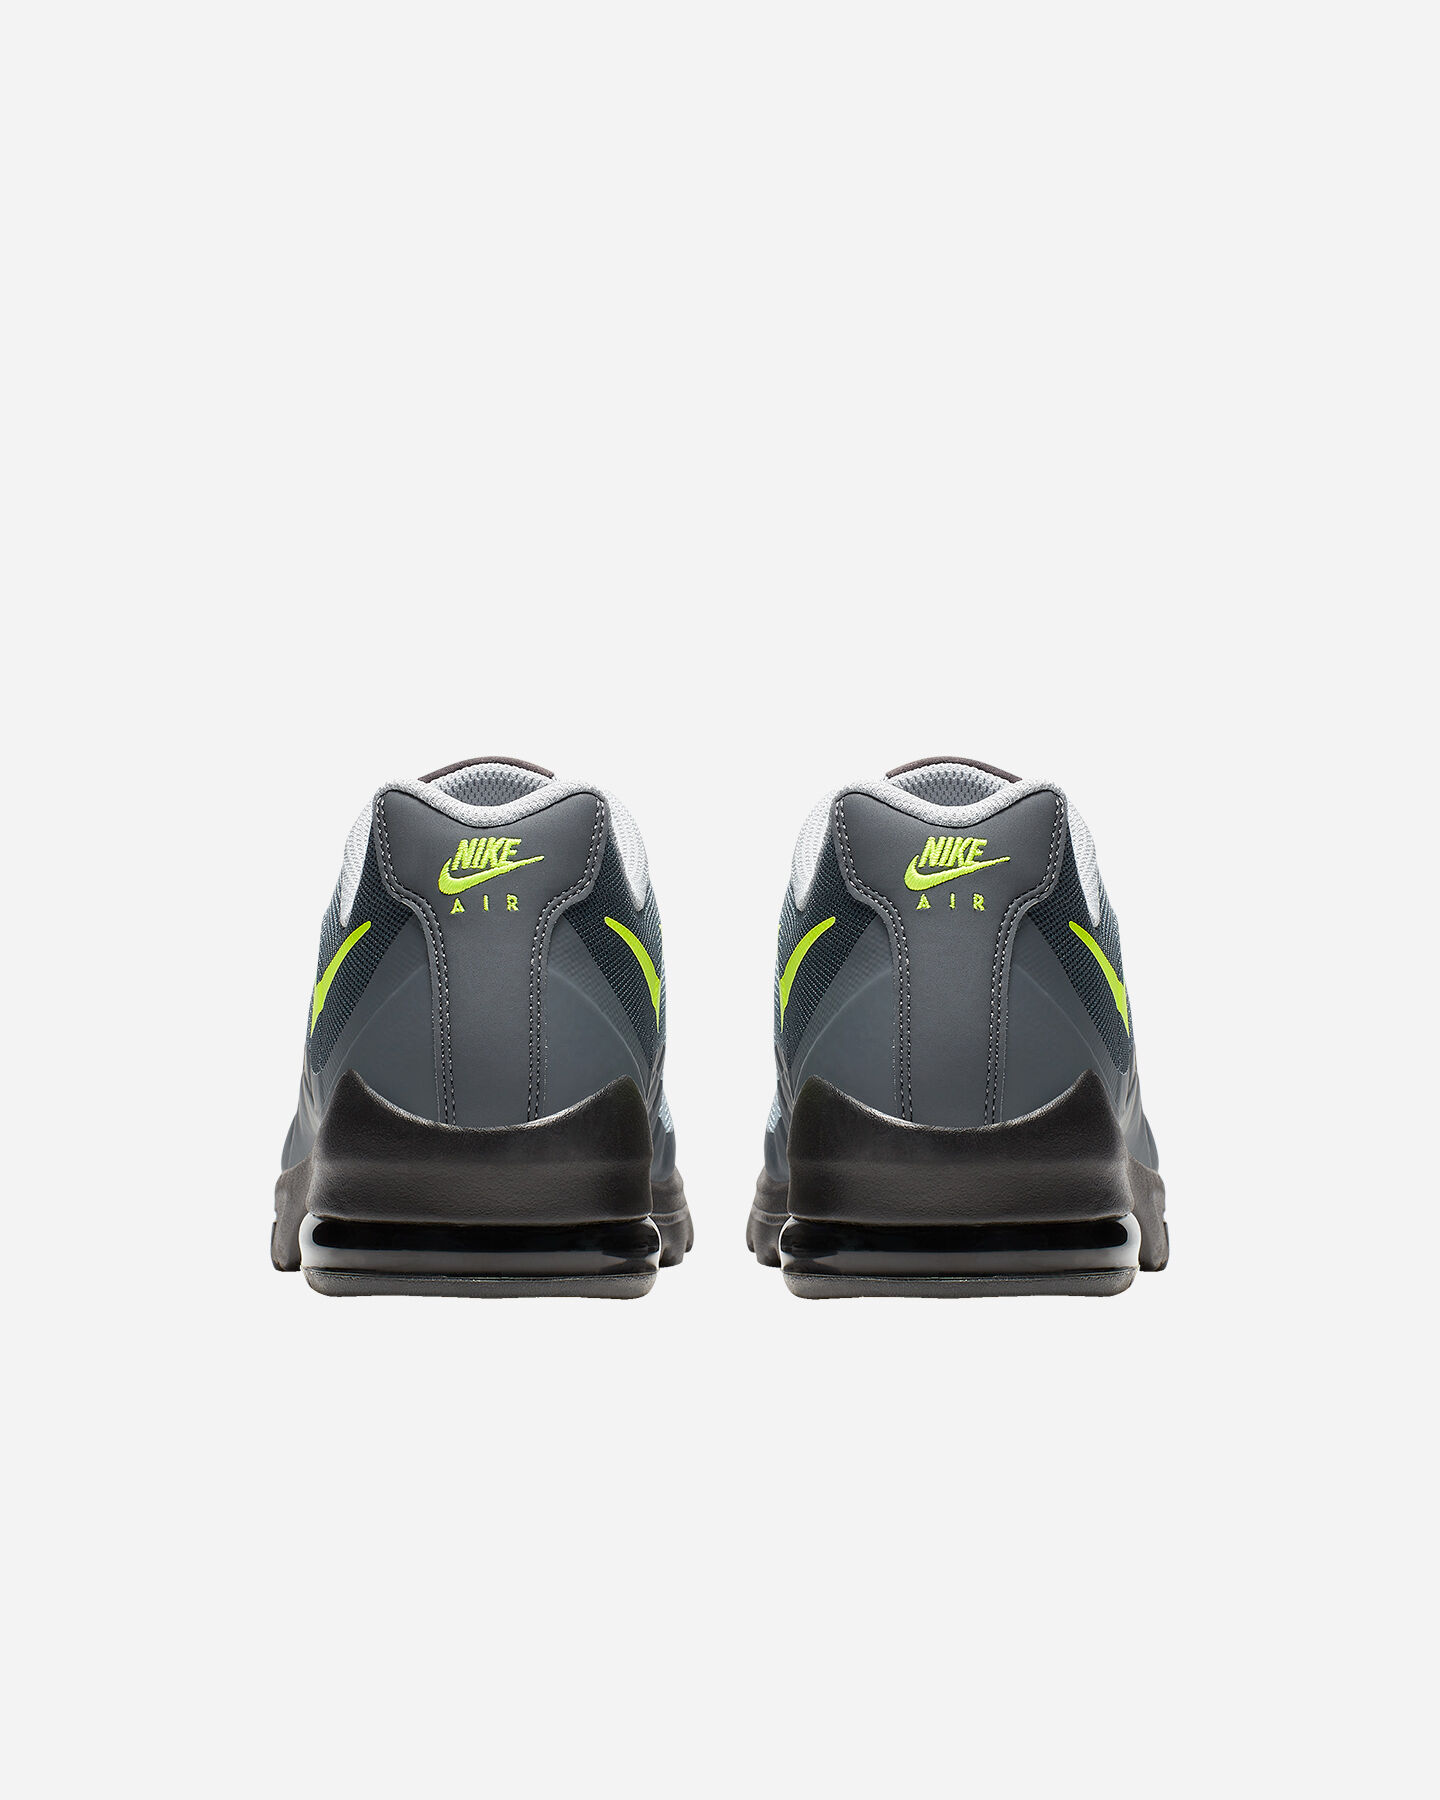  Scarpe sneakers NIKE AIR MAX INVIGOR M S5061120|004|6 scatto 4